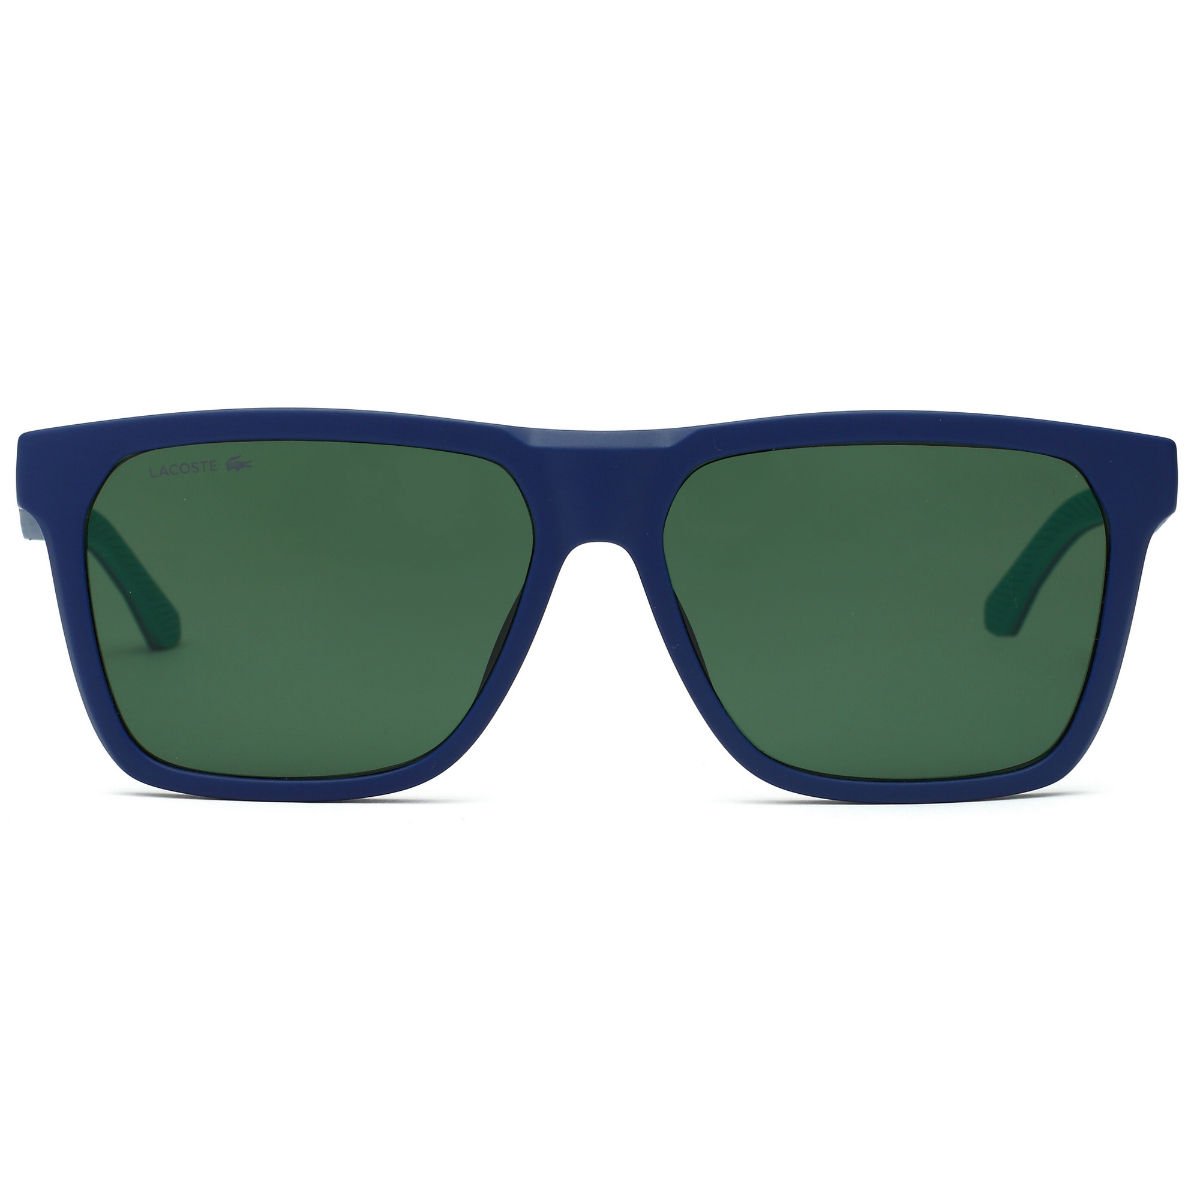 Buy Lacoste Green Lens Rectangle Sunglass Full Rim Matte Blue Frame (57)  Online